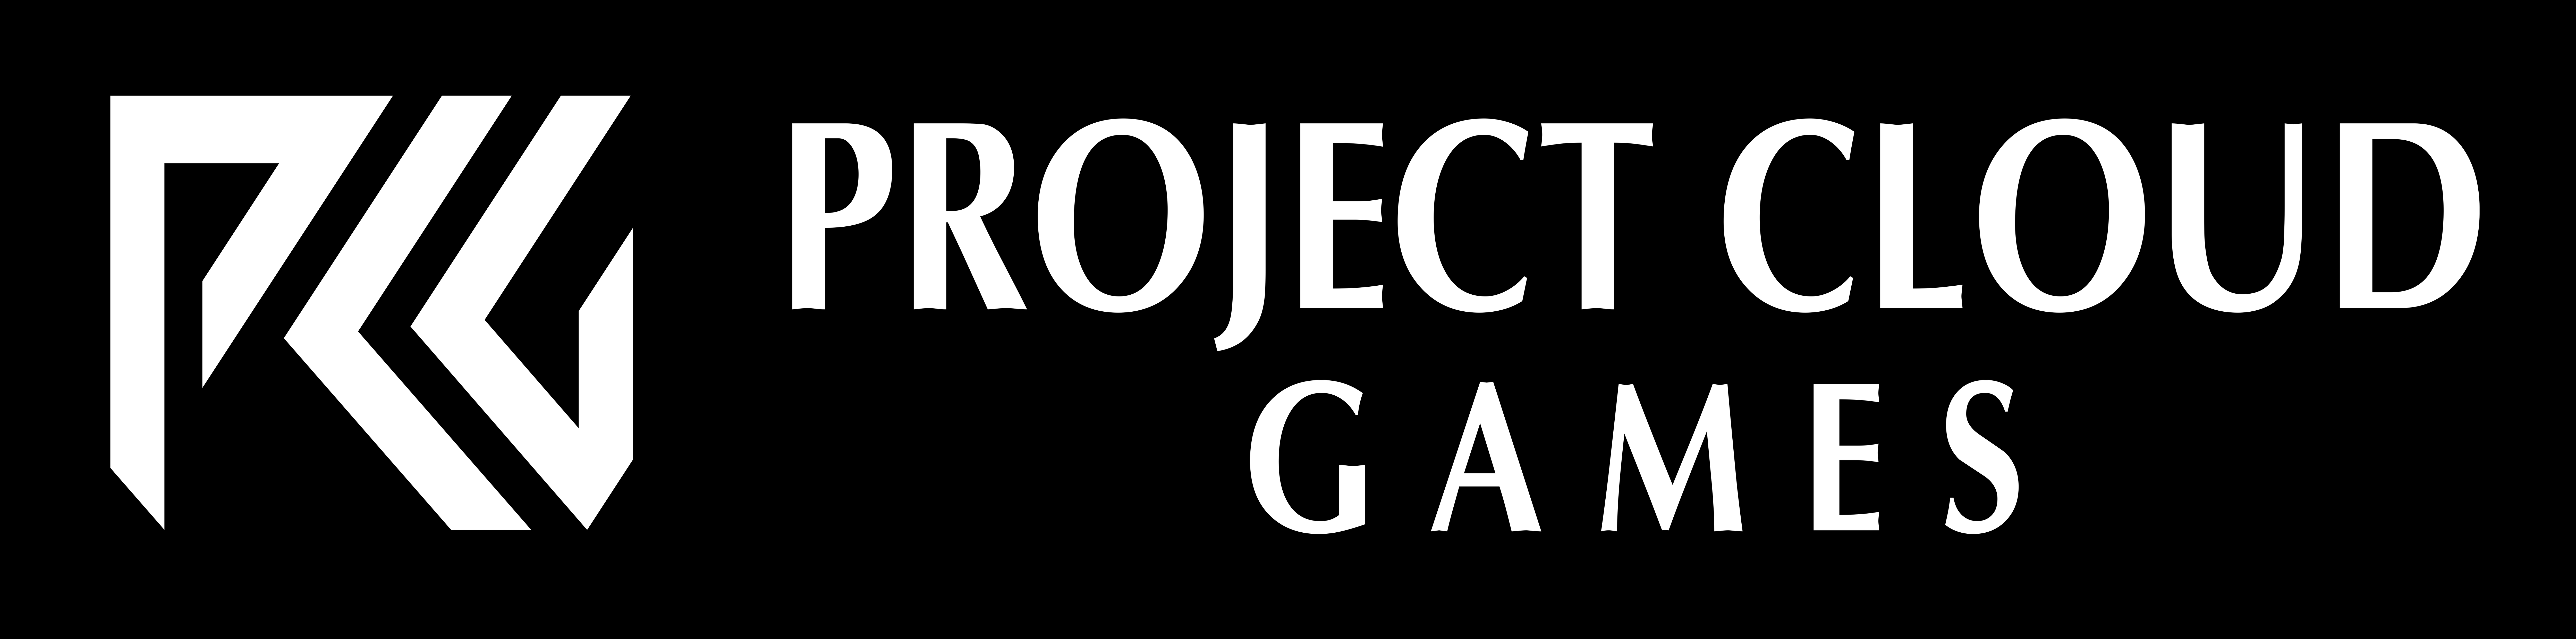 ProjectCloudGames